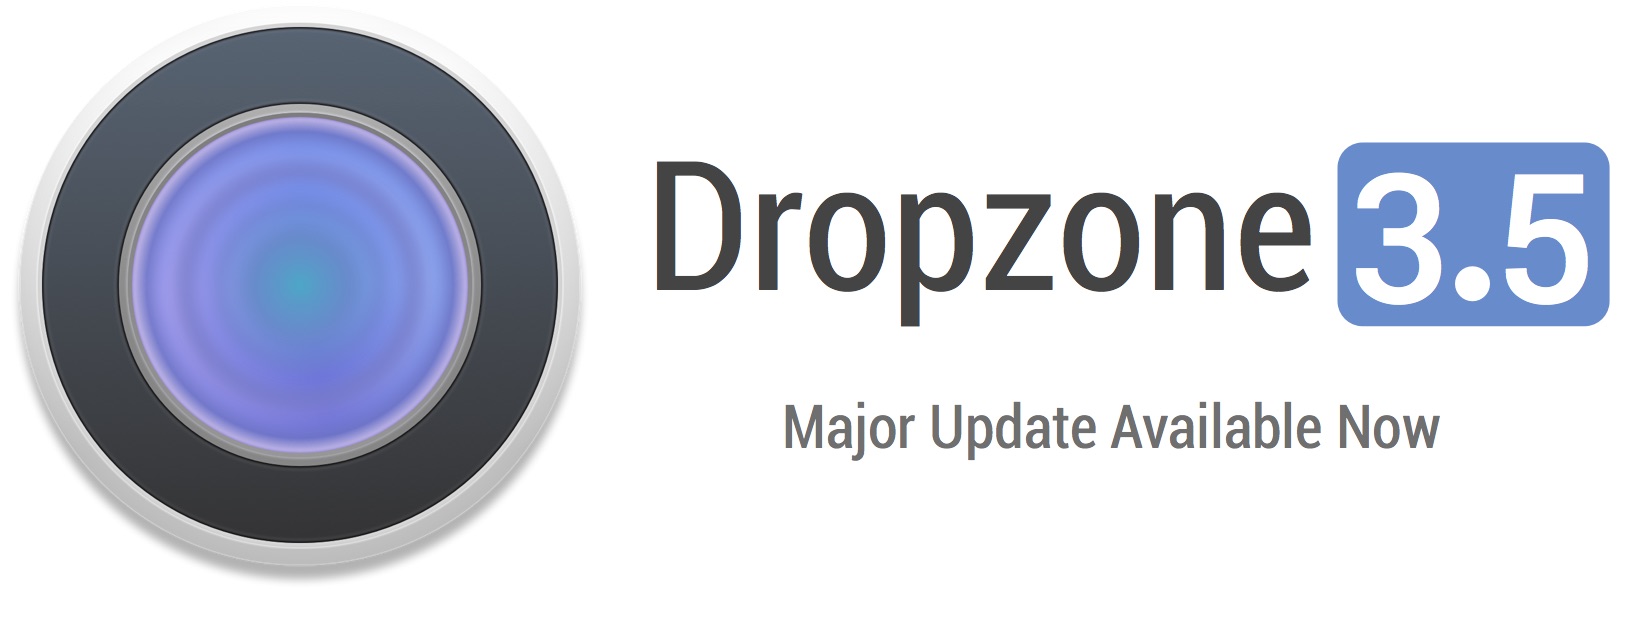 Dropzone 3.5